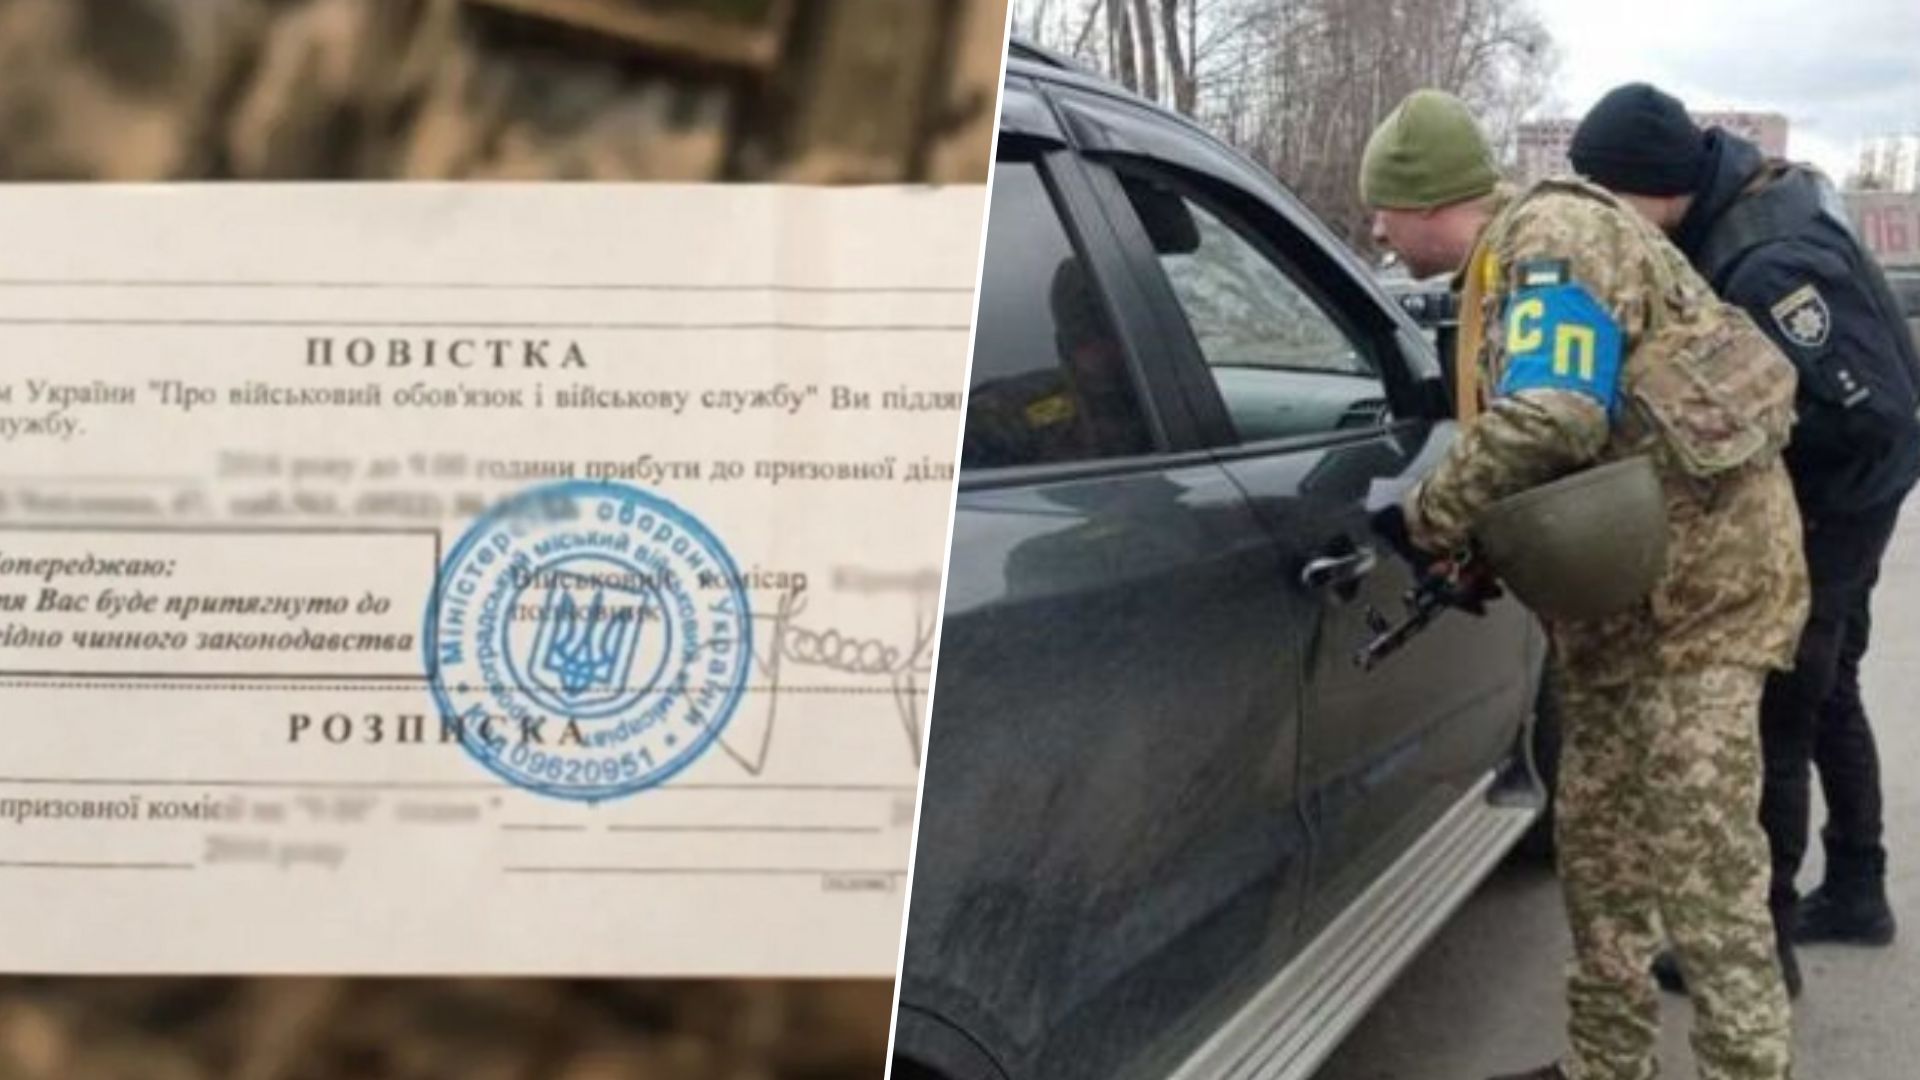 Юристка розповіла, чи можуть в Україні зупинити авто для вручення повістки